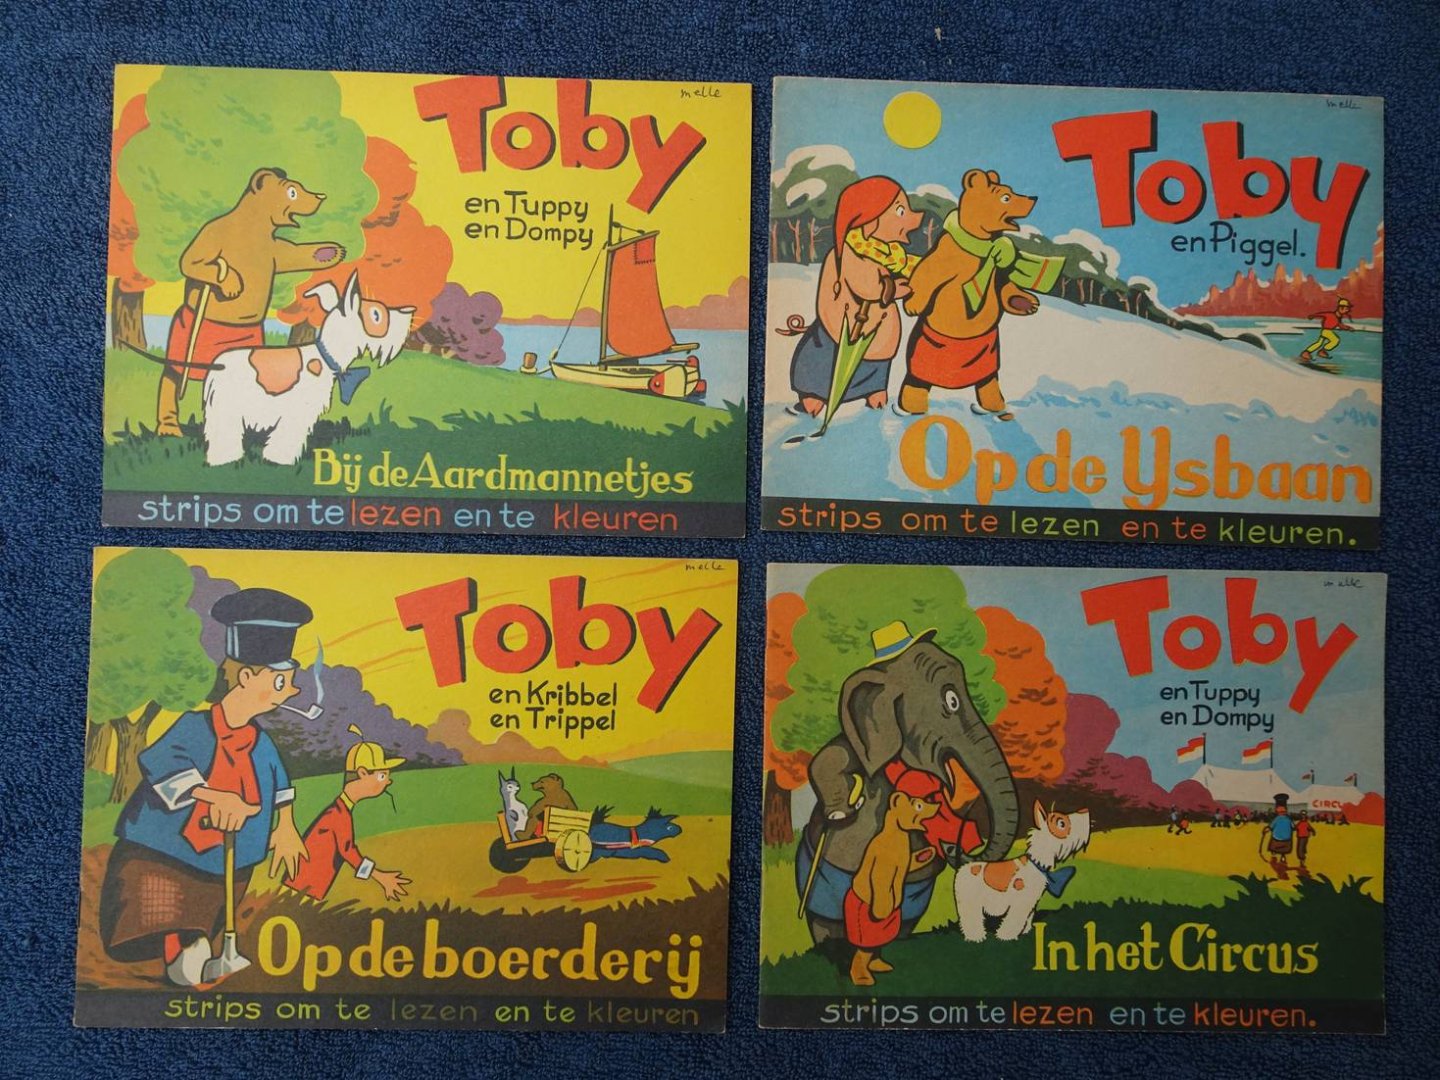 N.n.. - Toby en Tuppy en Dompy. In het Circus/ Toby en Piggel. Op de IJsbaan/ Toby en Kribbel en Trippel. Op de Boerderij/ Toby en Tuppy en Dompy. Bij de Aardmannetjes. Strips om te lezen en te kleuren. 4 deeltjes.